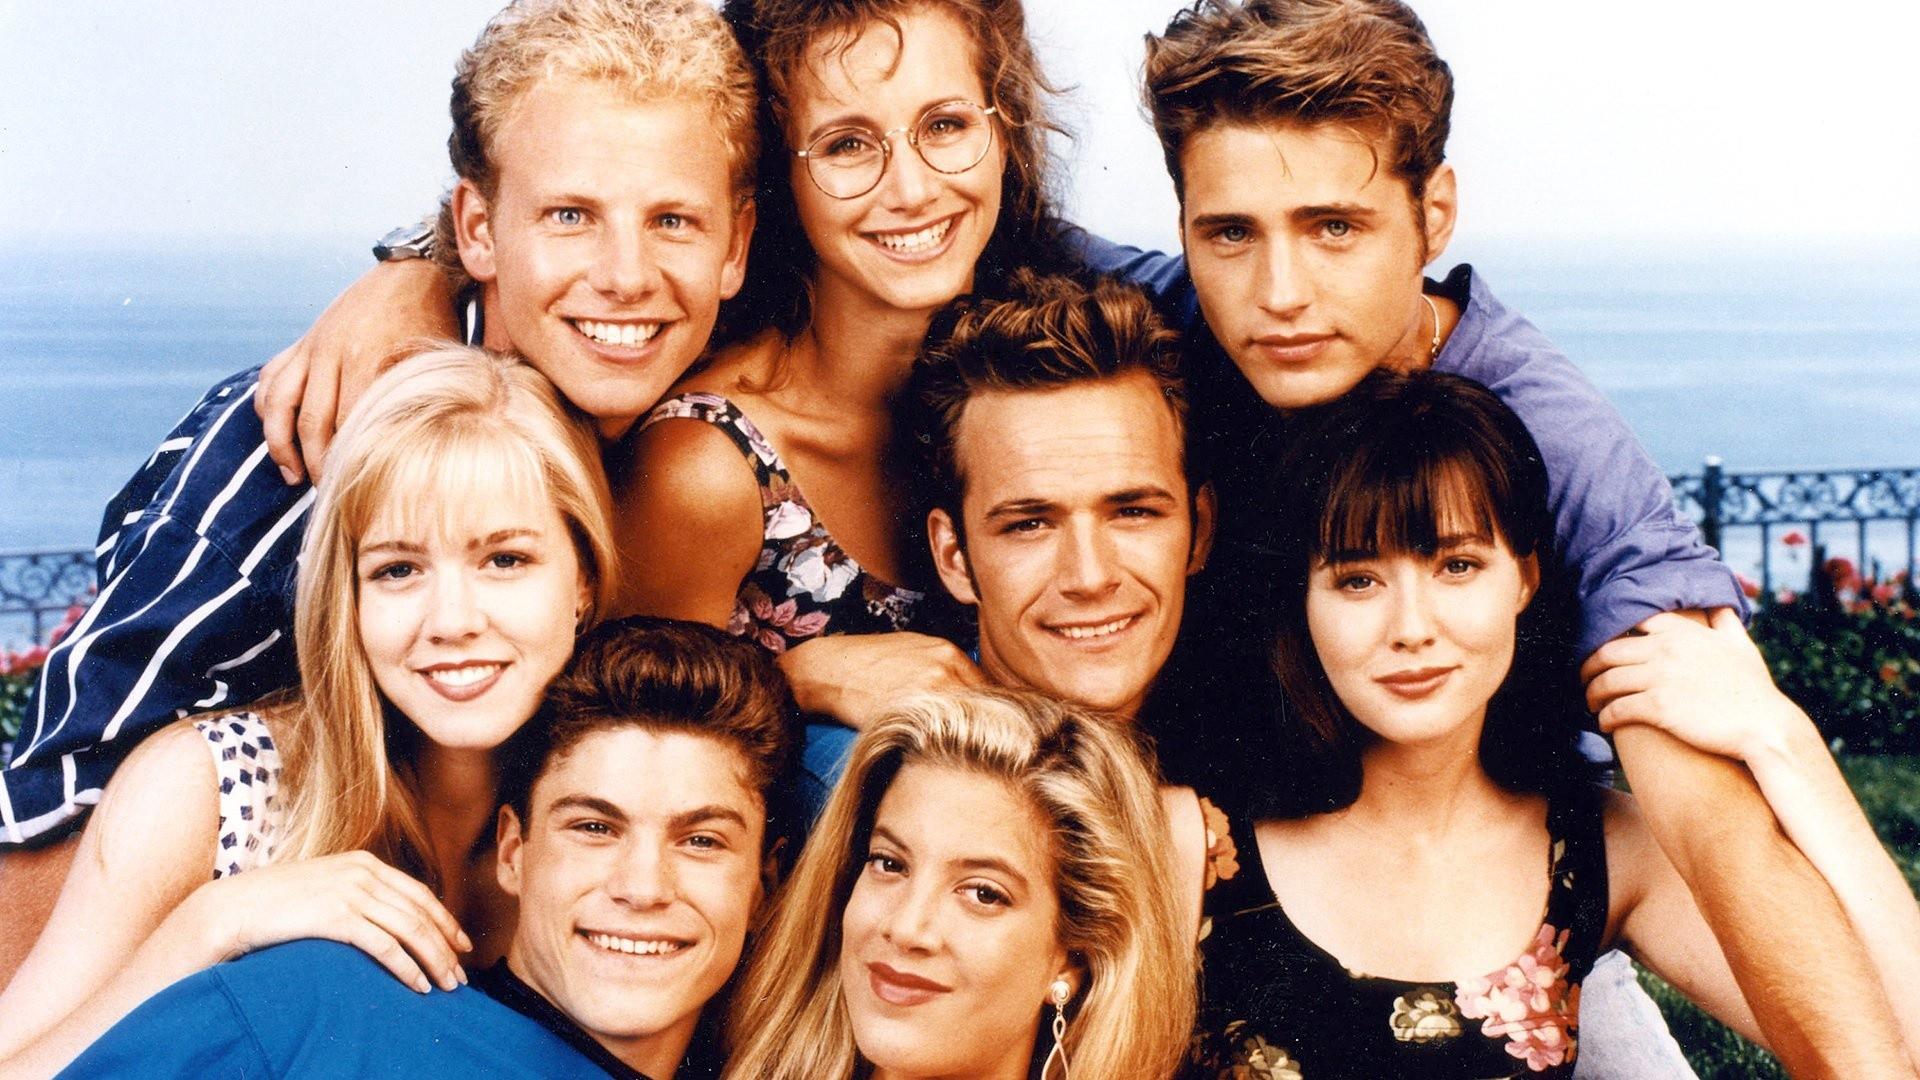 Беверли-Хиллз 90210 – 1 сезон 2 серия «Зелёная комната» / Beverly Hills, 90210